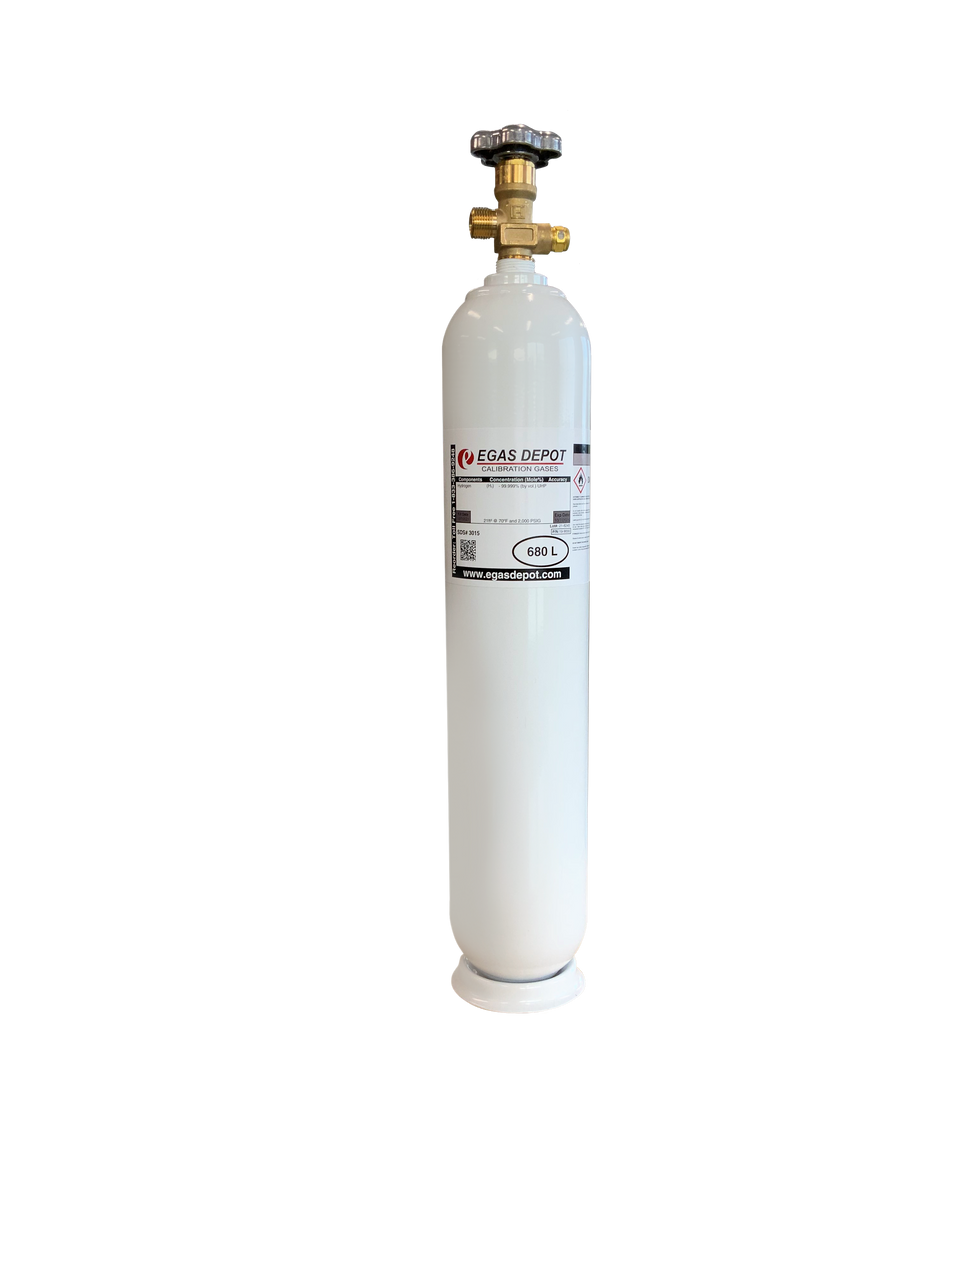 CH4 9,900 ppm/ Air 680 Liter calibration gas